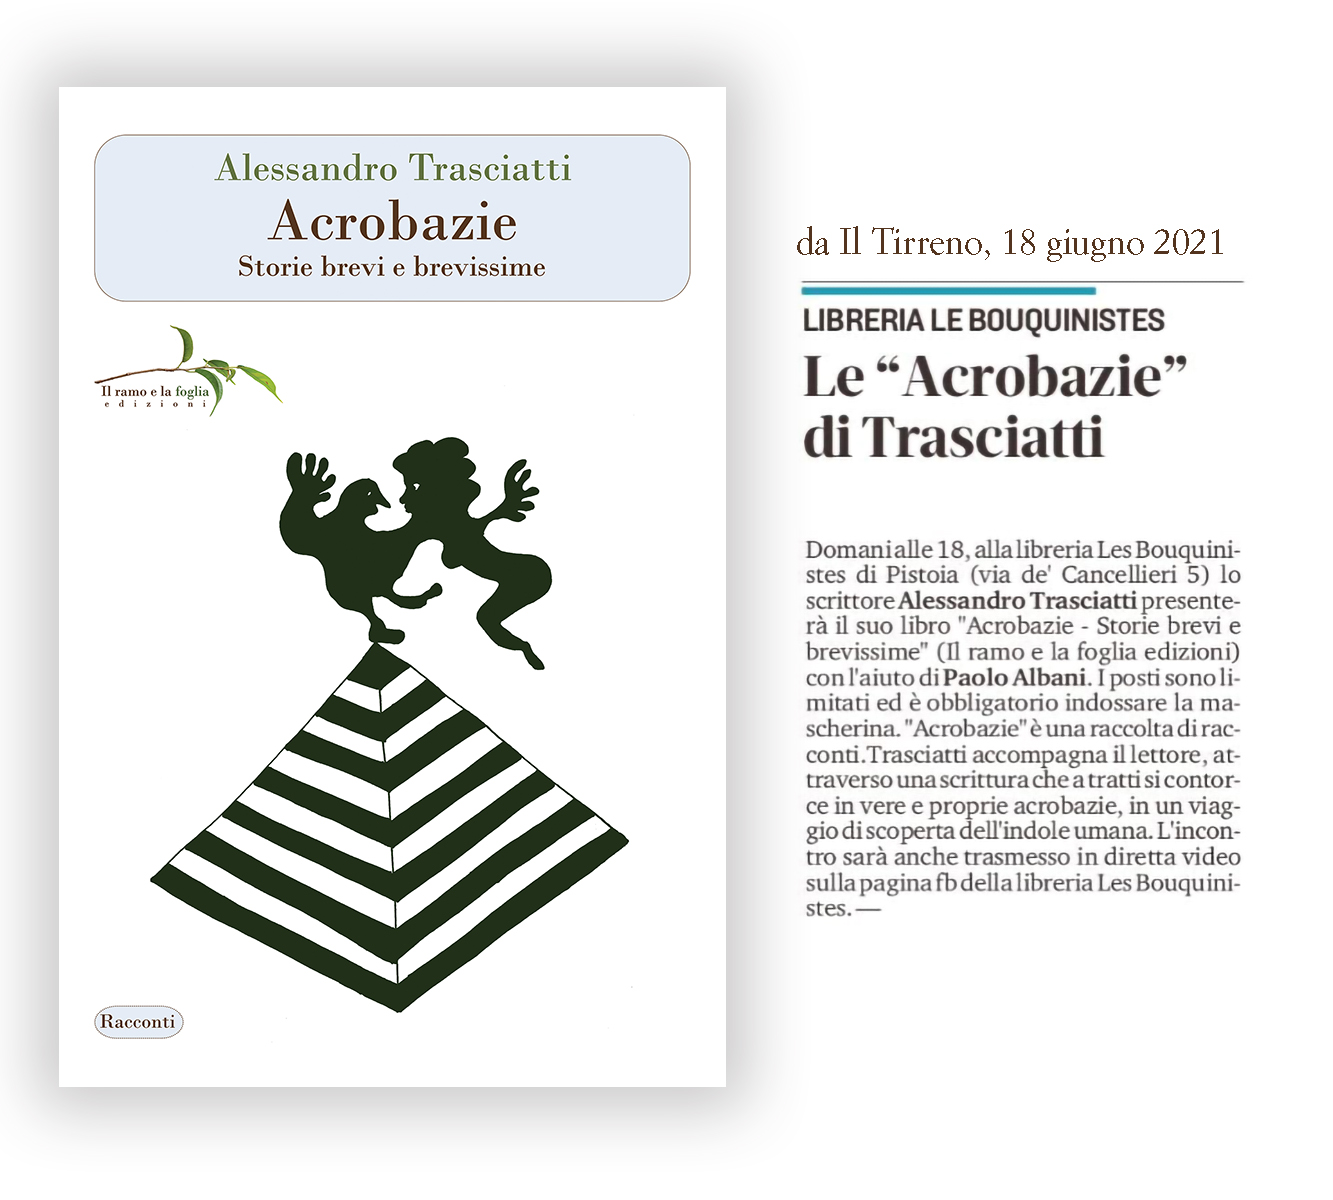 Articolo su Il Tirreno e copertina di Acrobazie